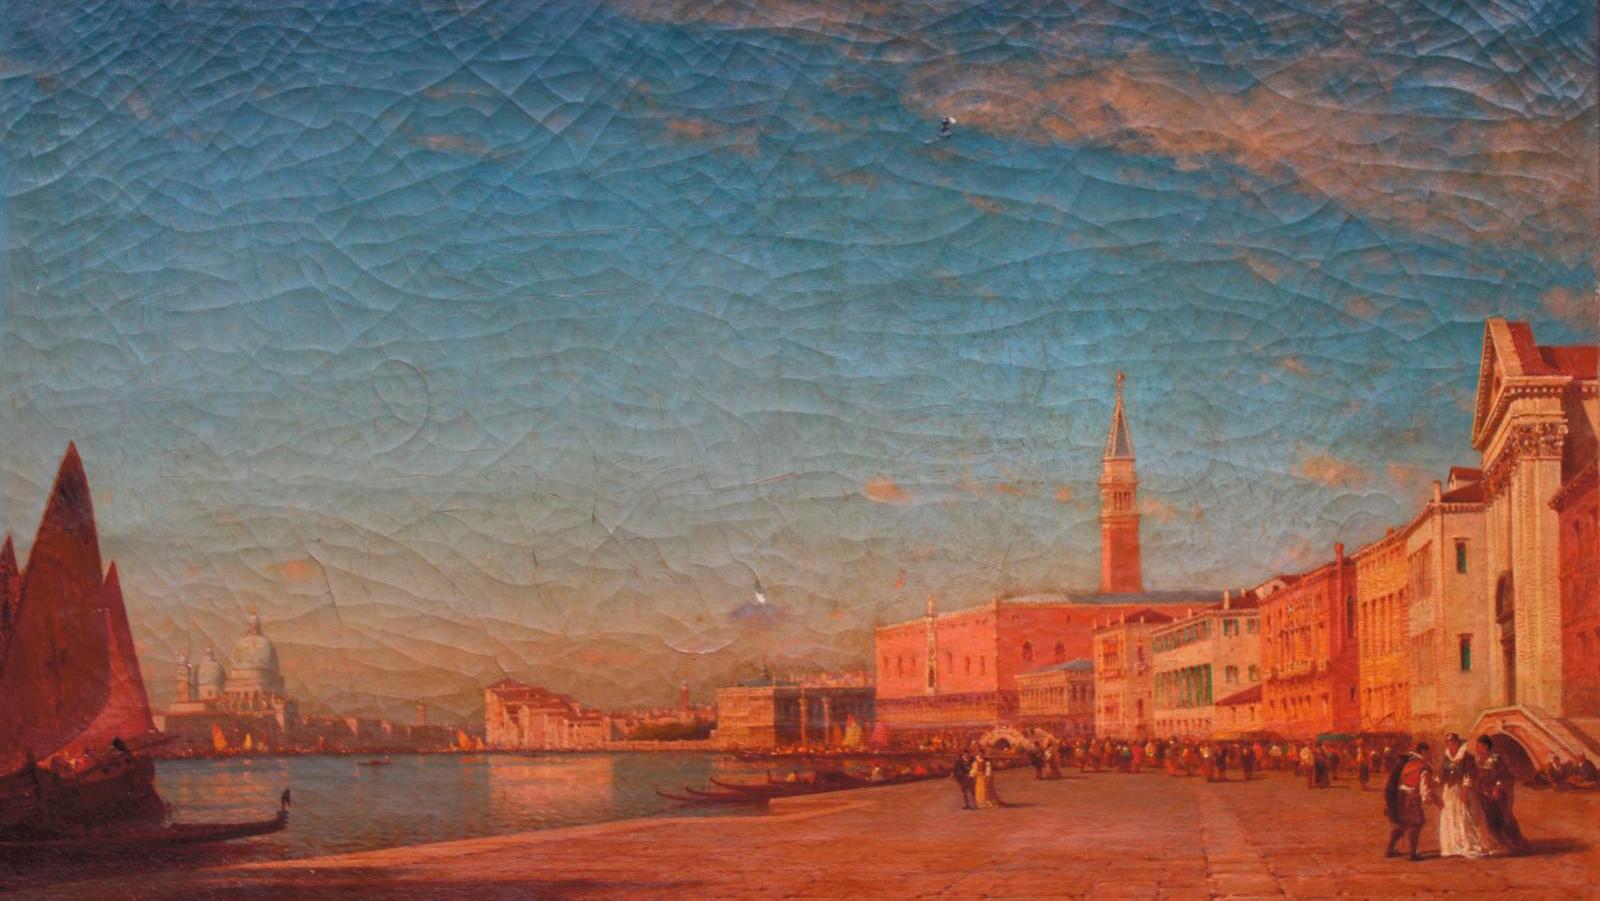 Félix Ziem (1821-1911), Venise, le Grand Canal (Venice, the Grand Canal), signed... Félix Ziem in Venice